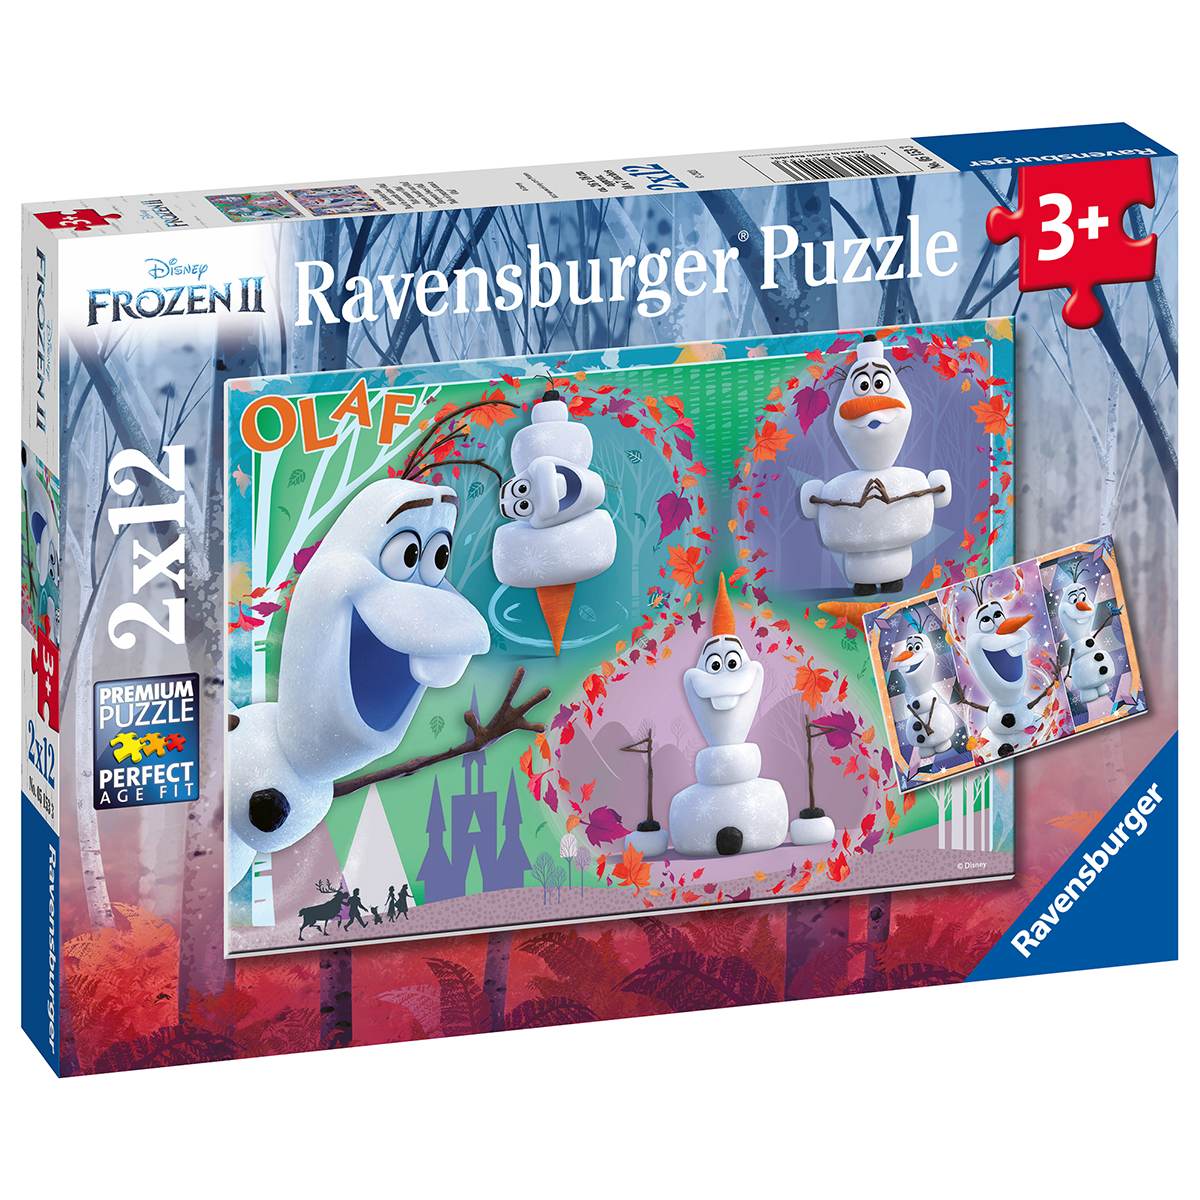 Ravensburger 2 puzzle 12 pezzi per bambini dai 3 anni - disney frozen - DISNEY PRINCESS, RAVENSBURGER, Frozen